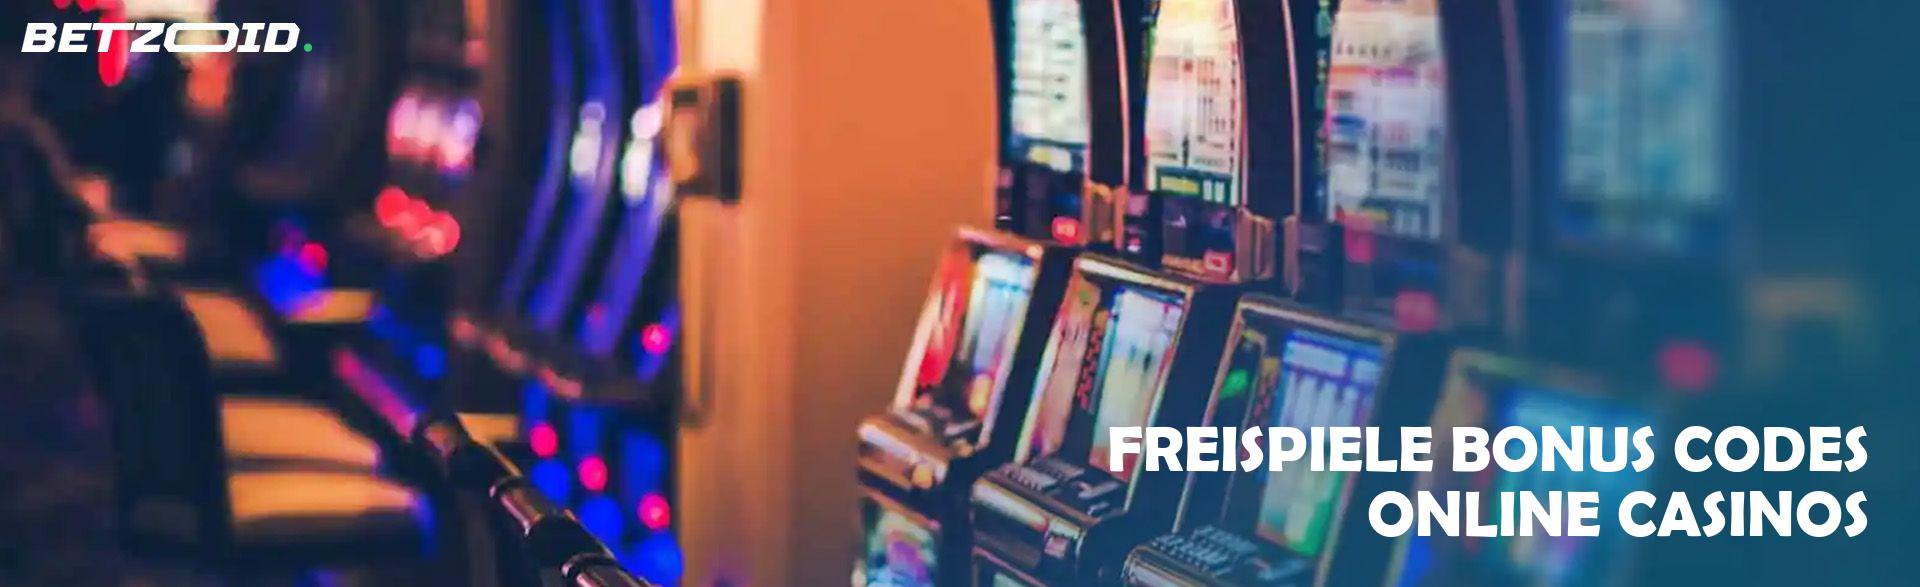 Freispiele Bonus Codes Online Casinos.